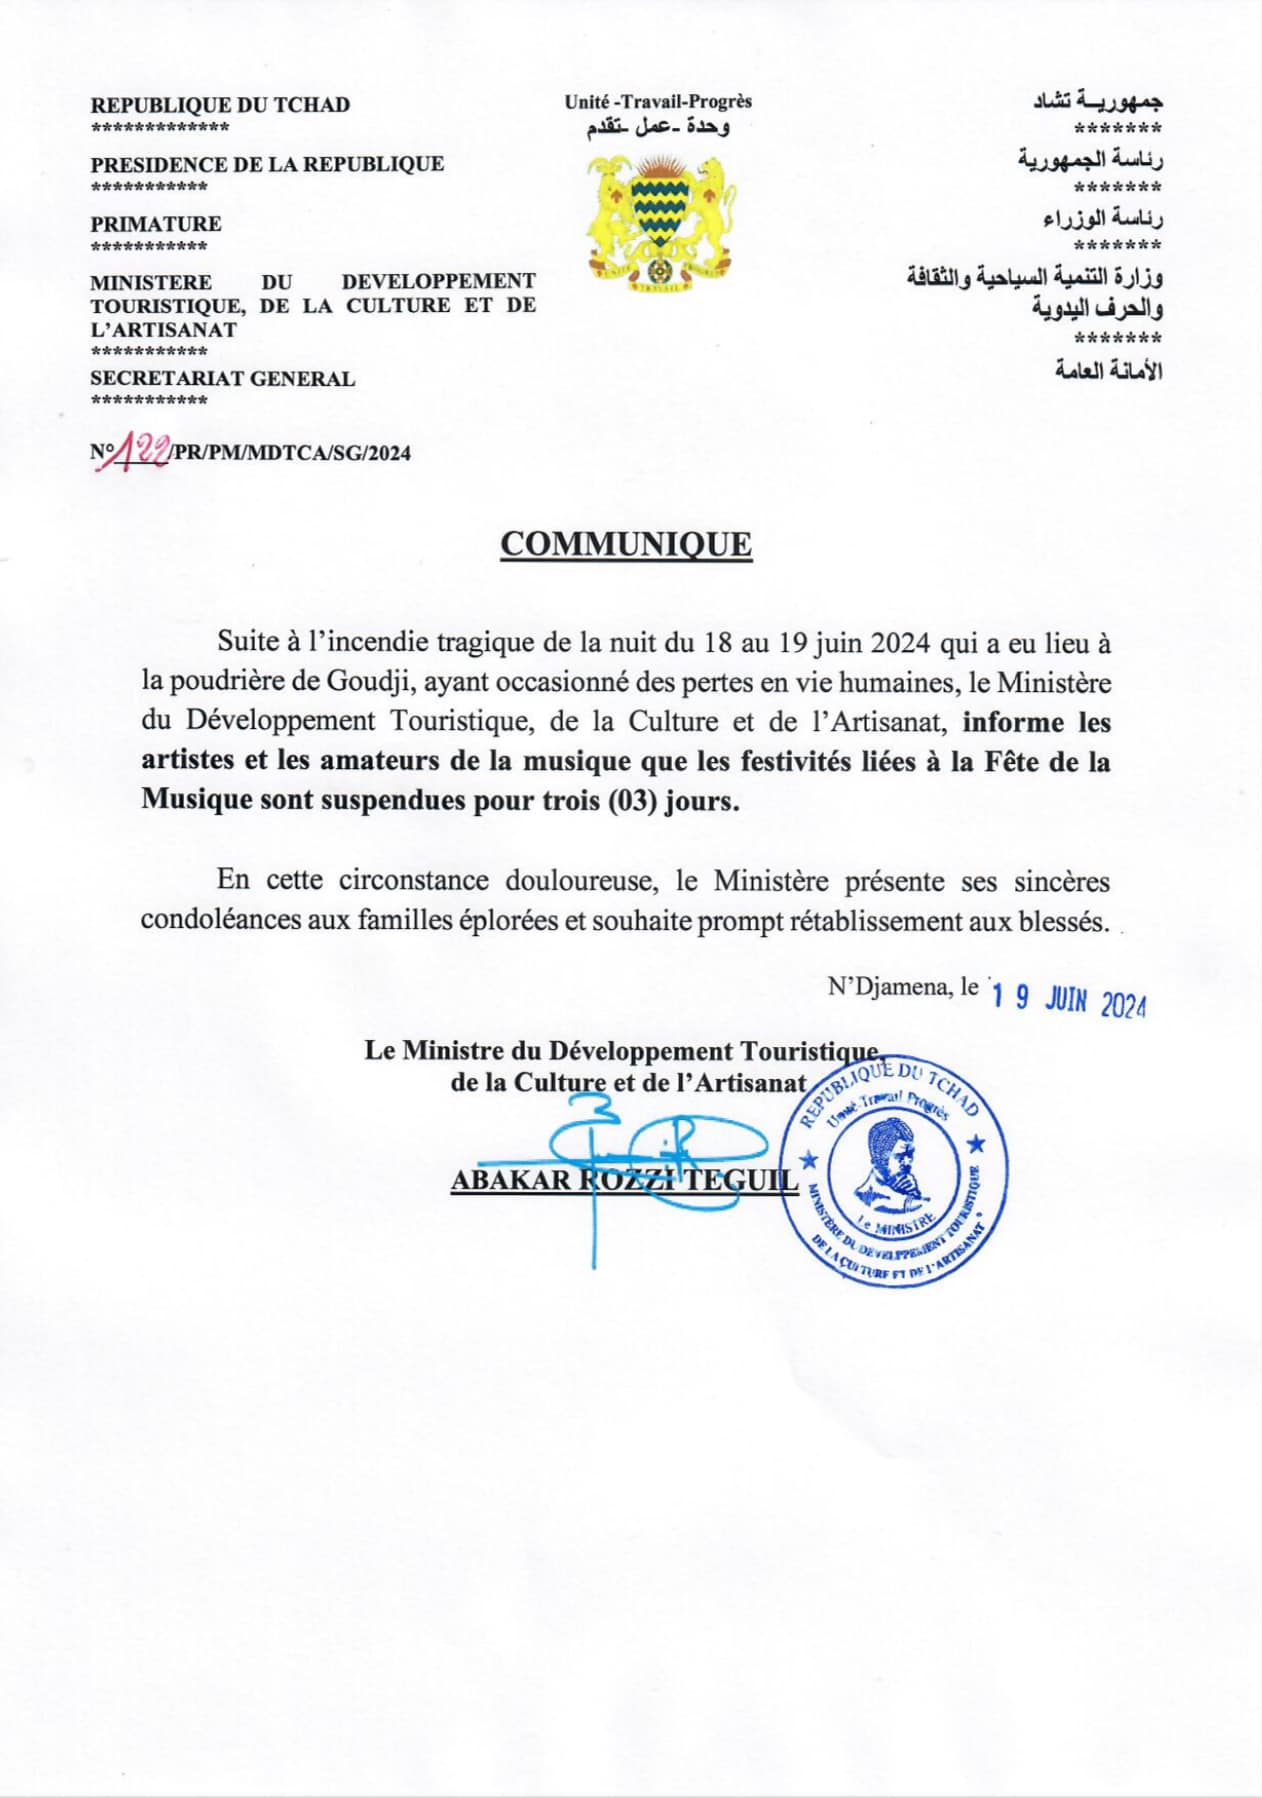 Tchad : Les festivités liées à la fête de la musique sont suspendues pour 3 jours